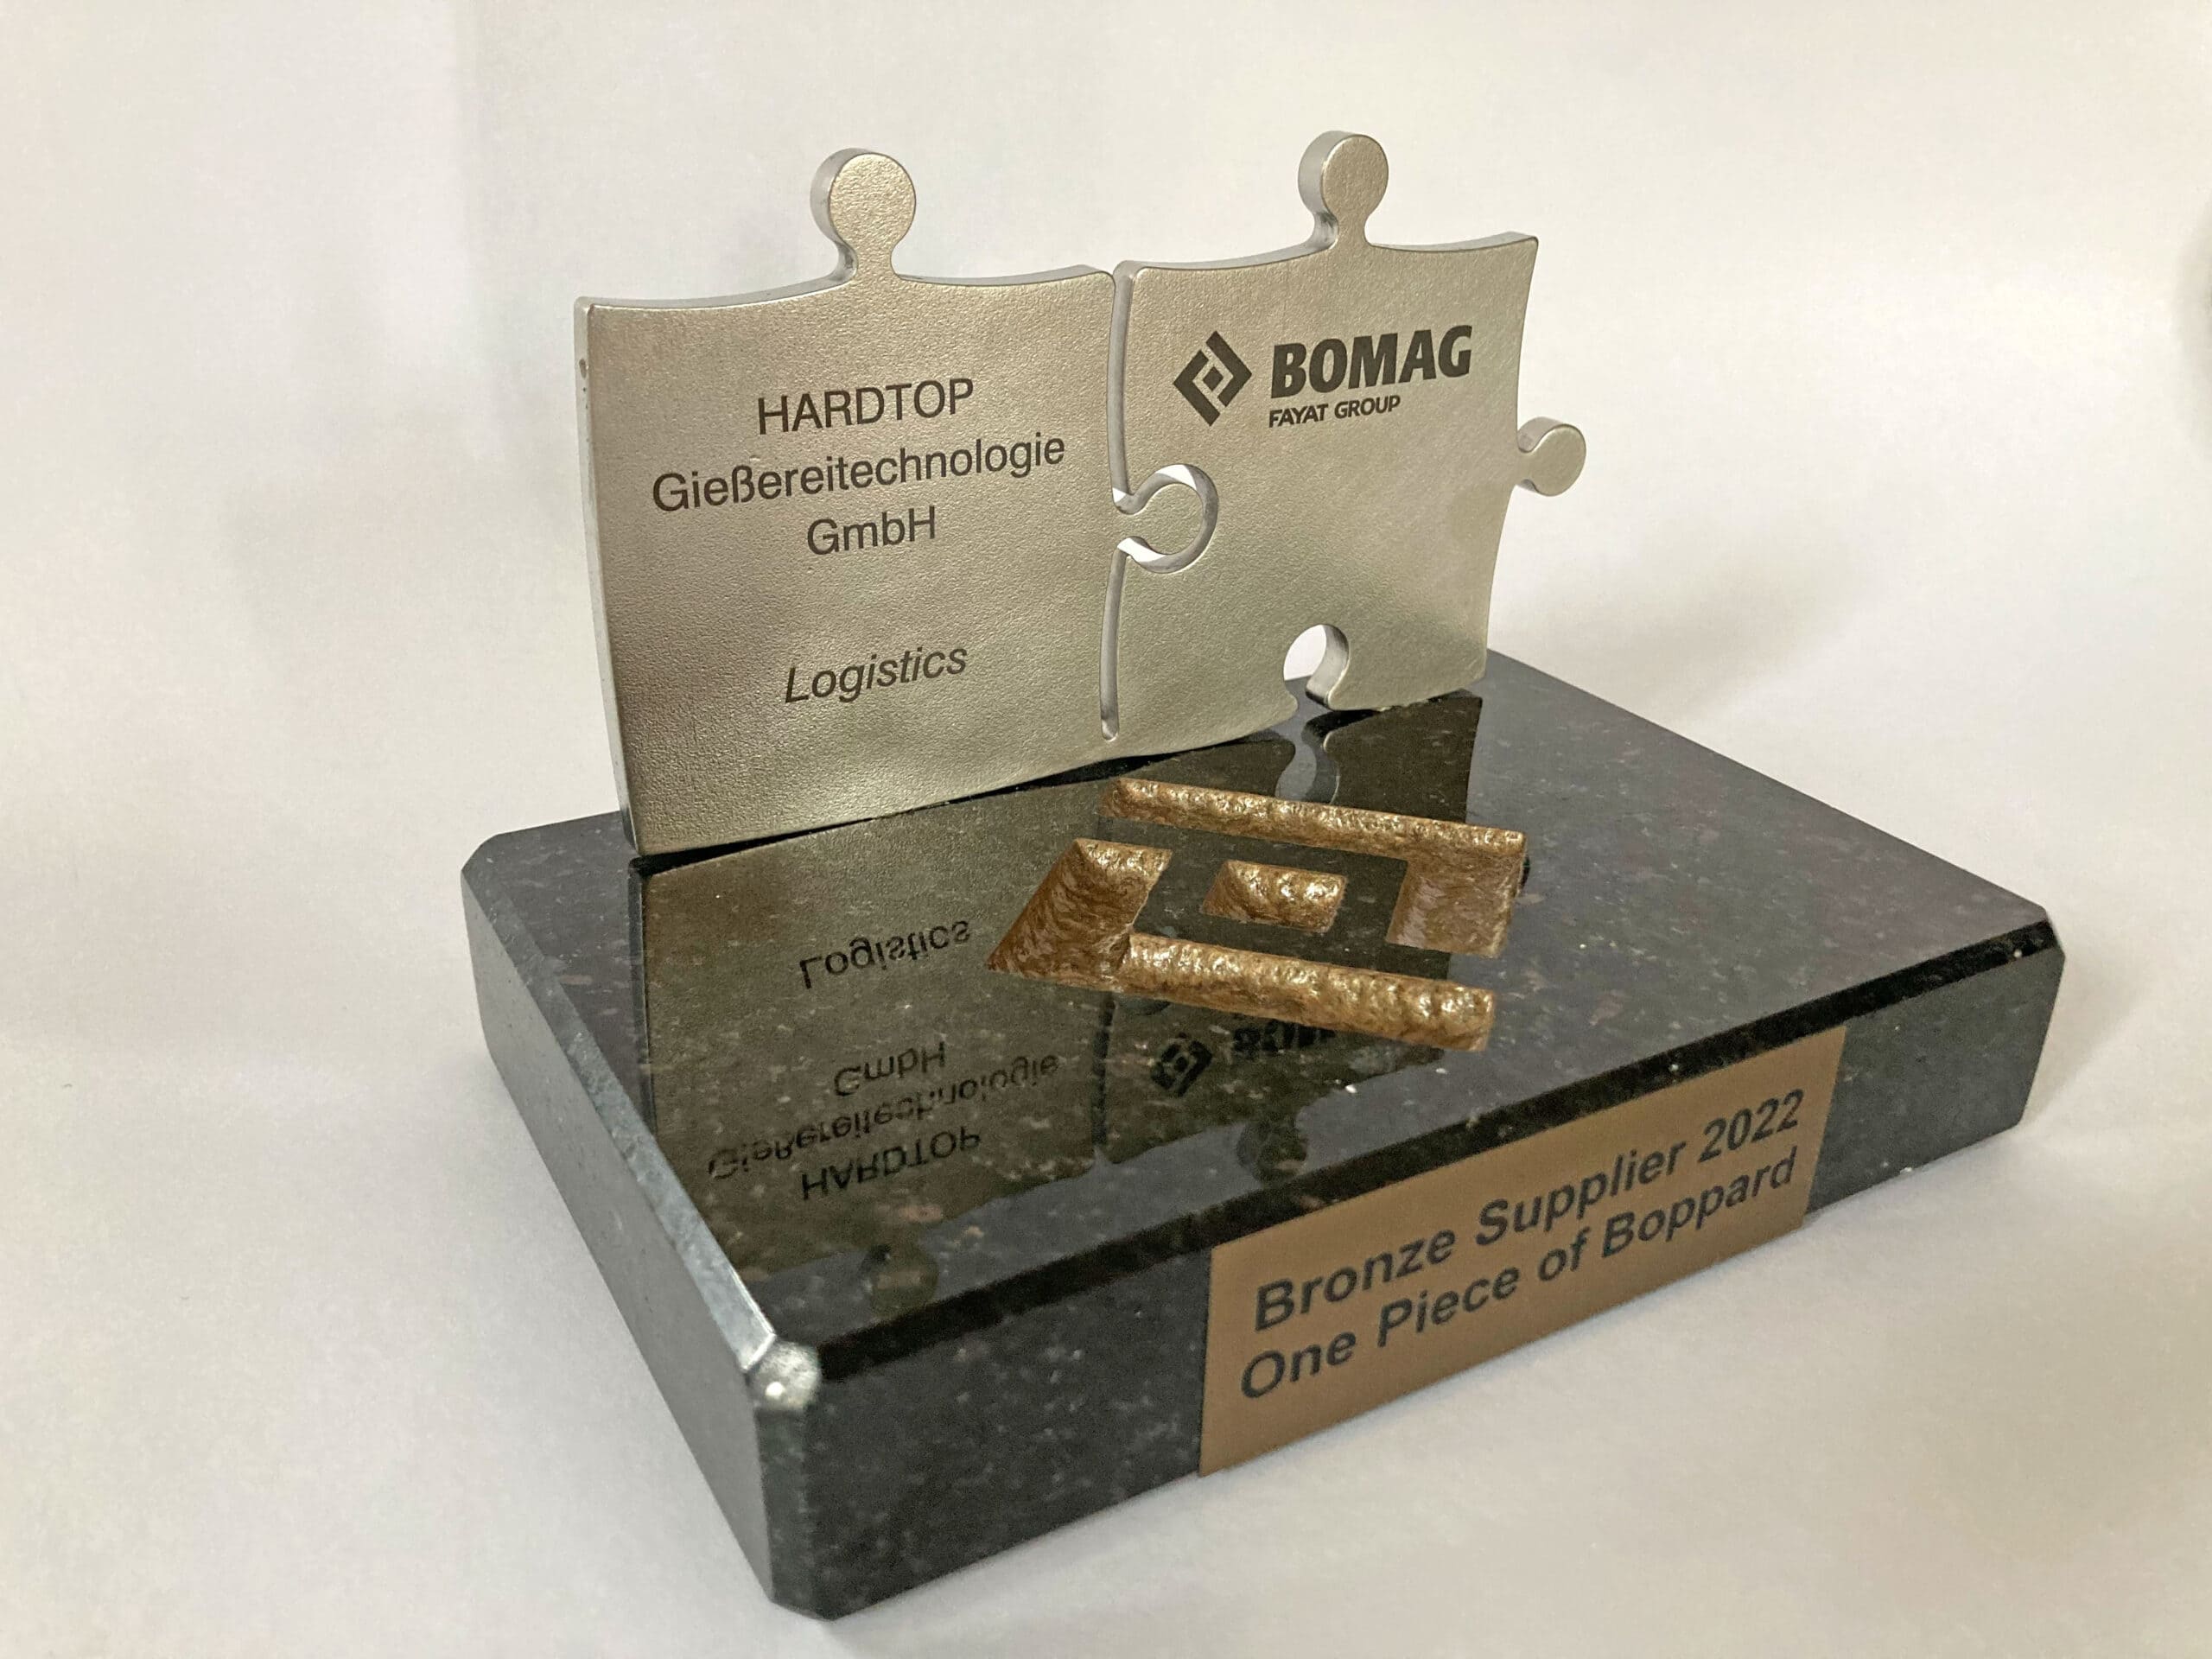 Europäischer BOMAG-Lieferantenpreis 2022 in Bronze